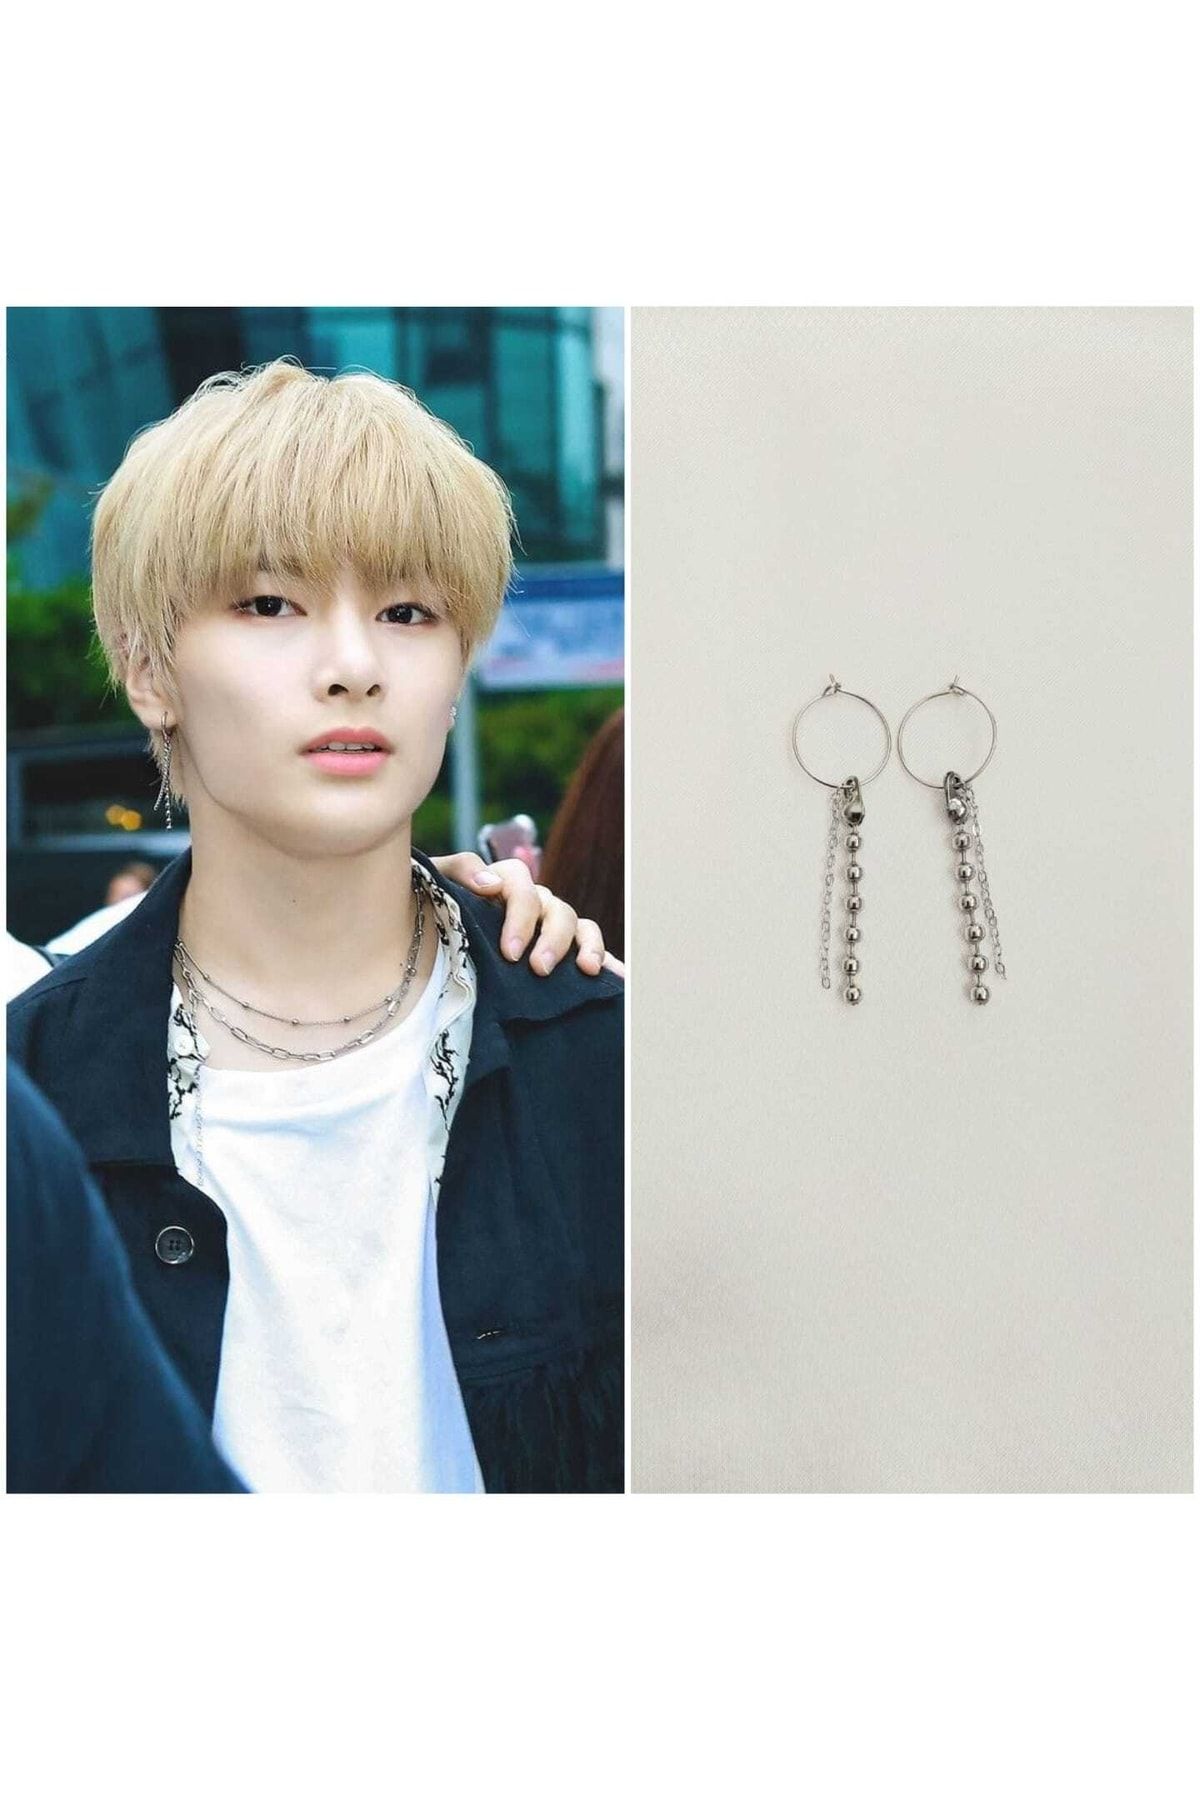 KPop Idol BTS Earrings JIMIN 9 Designs Non allergy Surgical Steel Silver  Jewelry | eBay